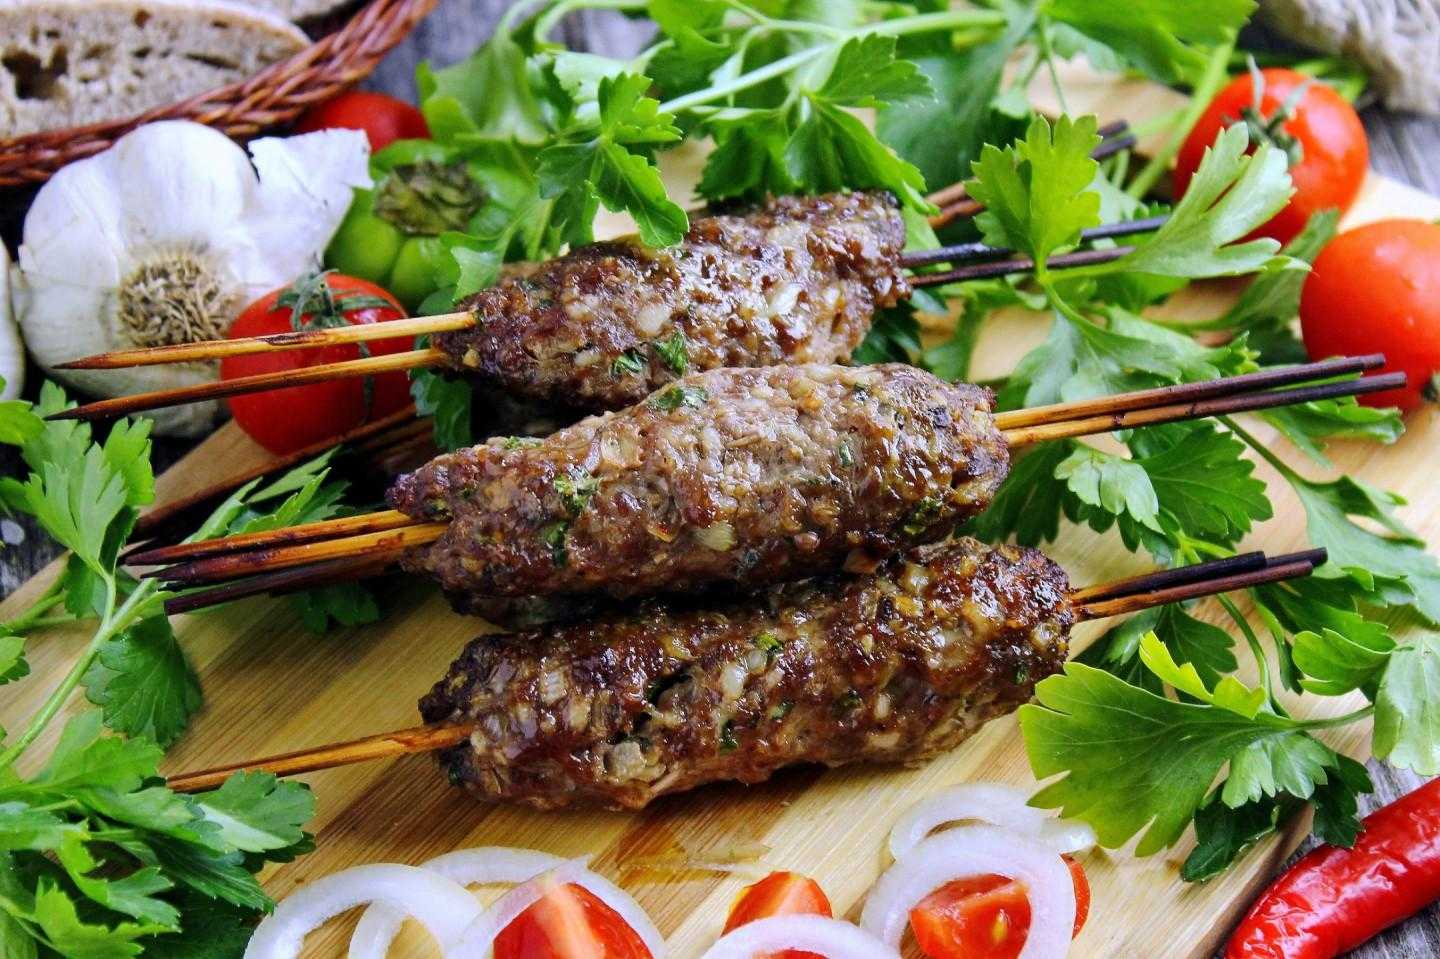 Как приготовить Люля-кебаб из говяжьего фарша в духовке  с использованием: фарш говяжий,укроп,лук репчатый,чеснок Люля-кебаб - это своеобразная колбаска на шпажке Вариаций приготовления блюда азербайджанской кухни множество